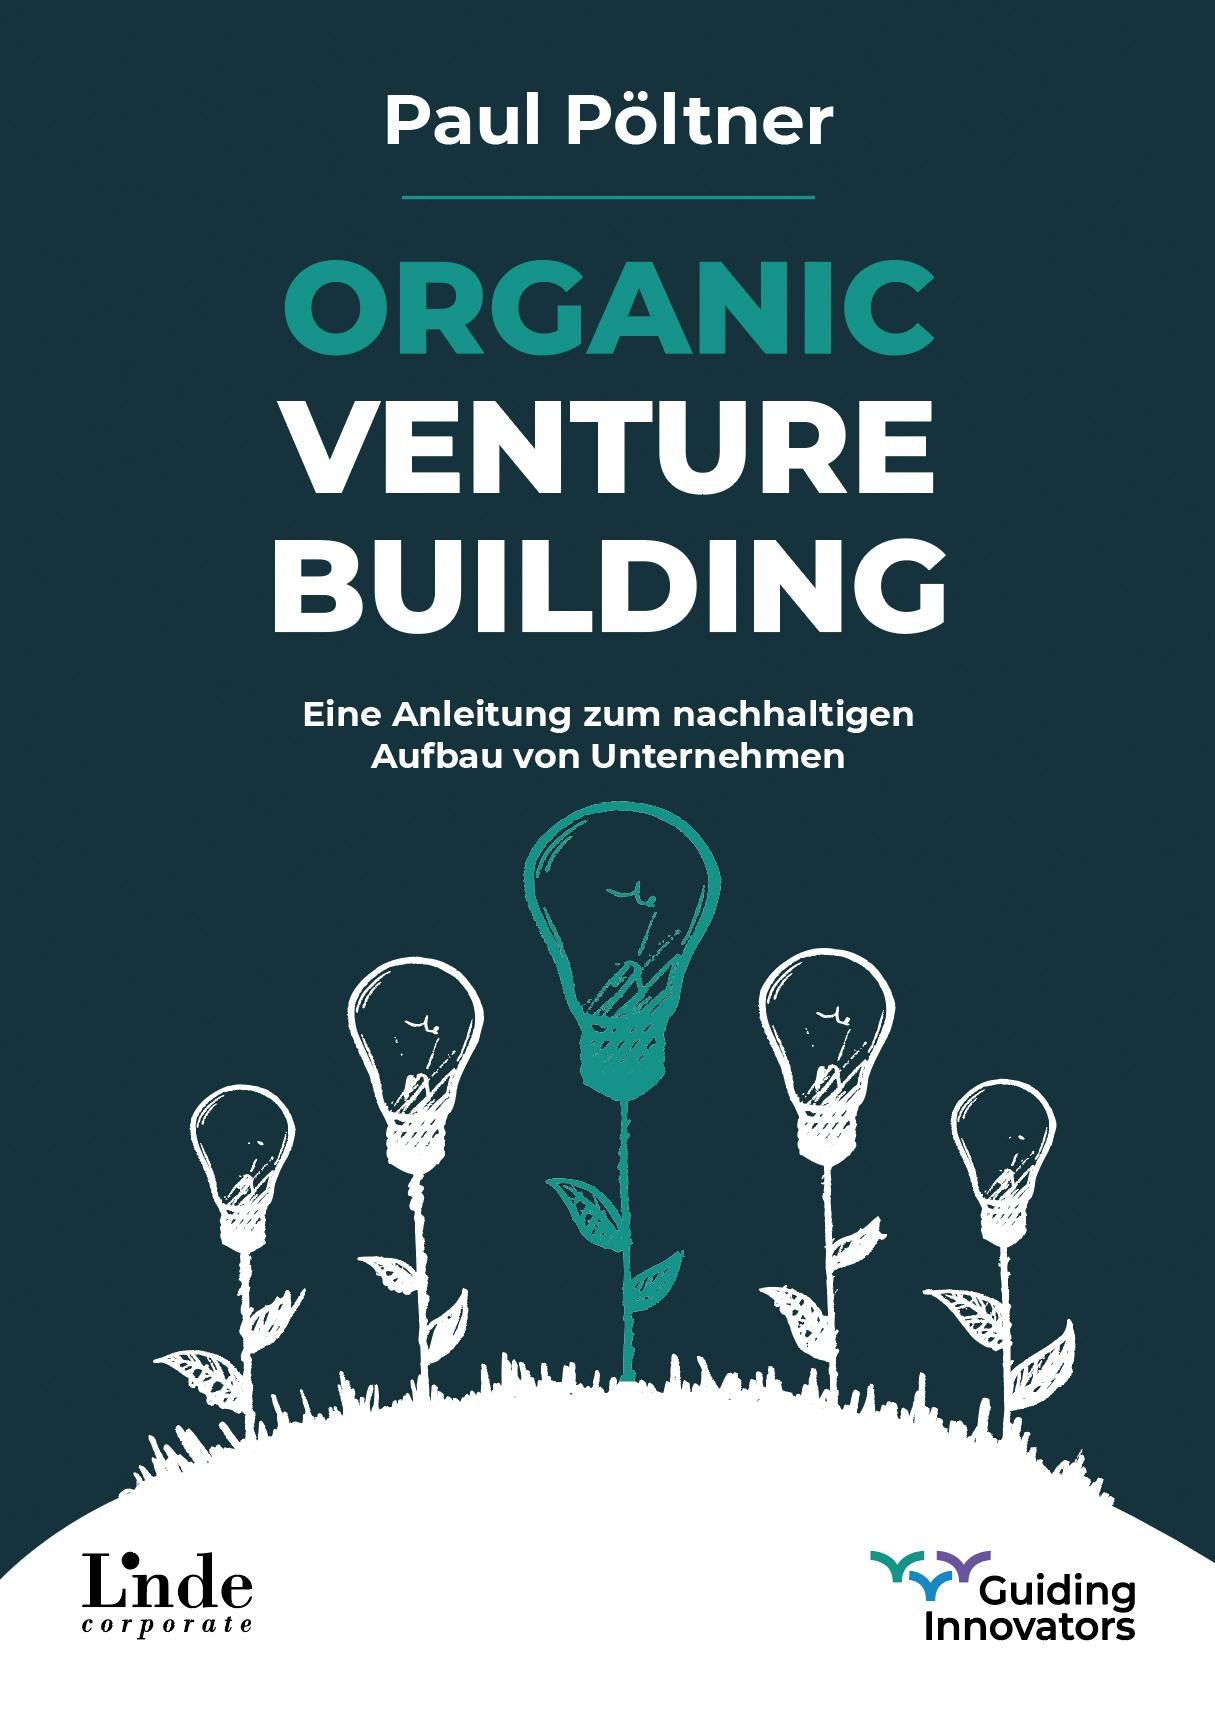 Pöltner
Organic Venture Building
Eine Anleitung zum nachhaltigen Aufbau von Unternehmen